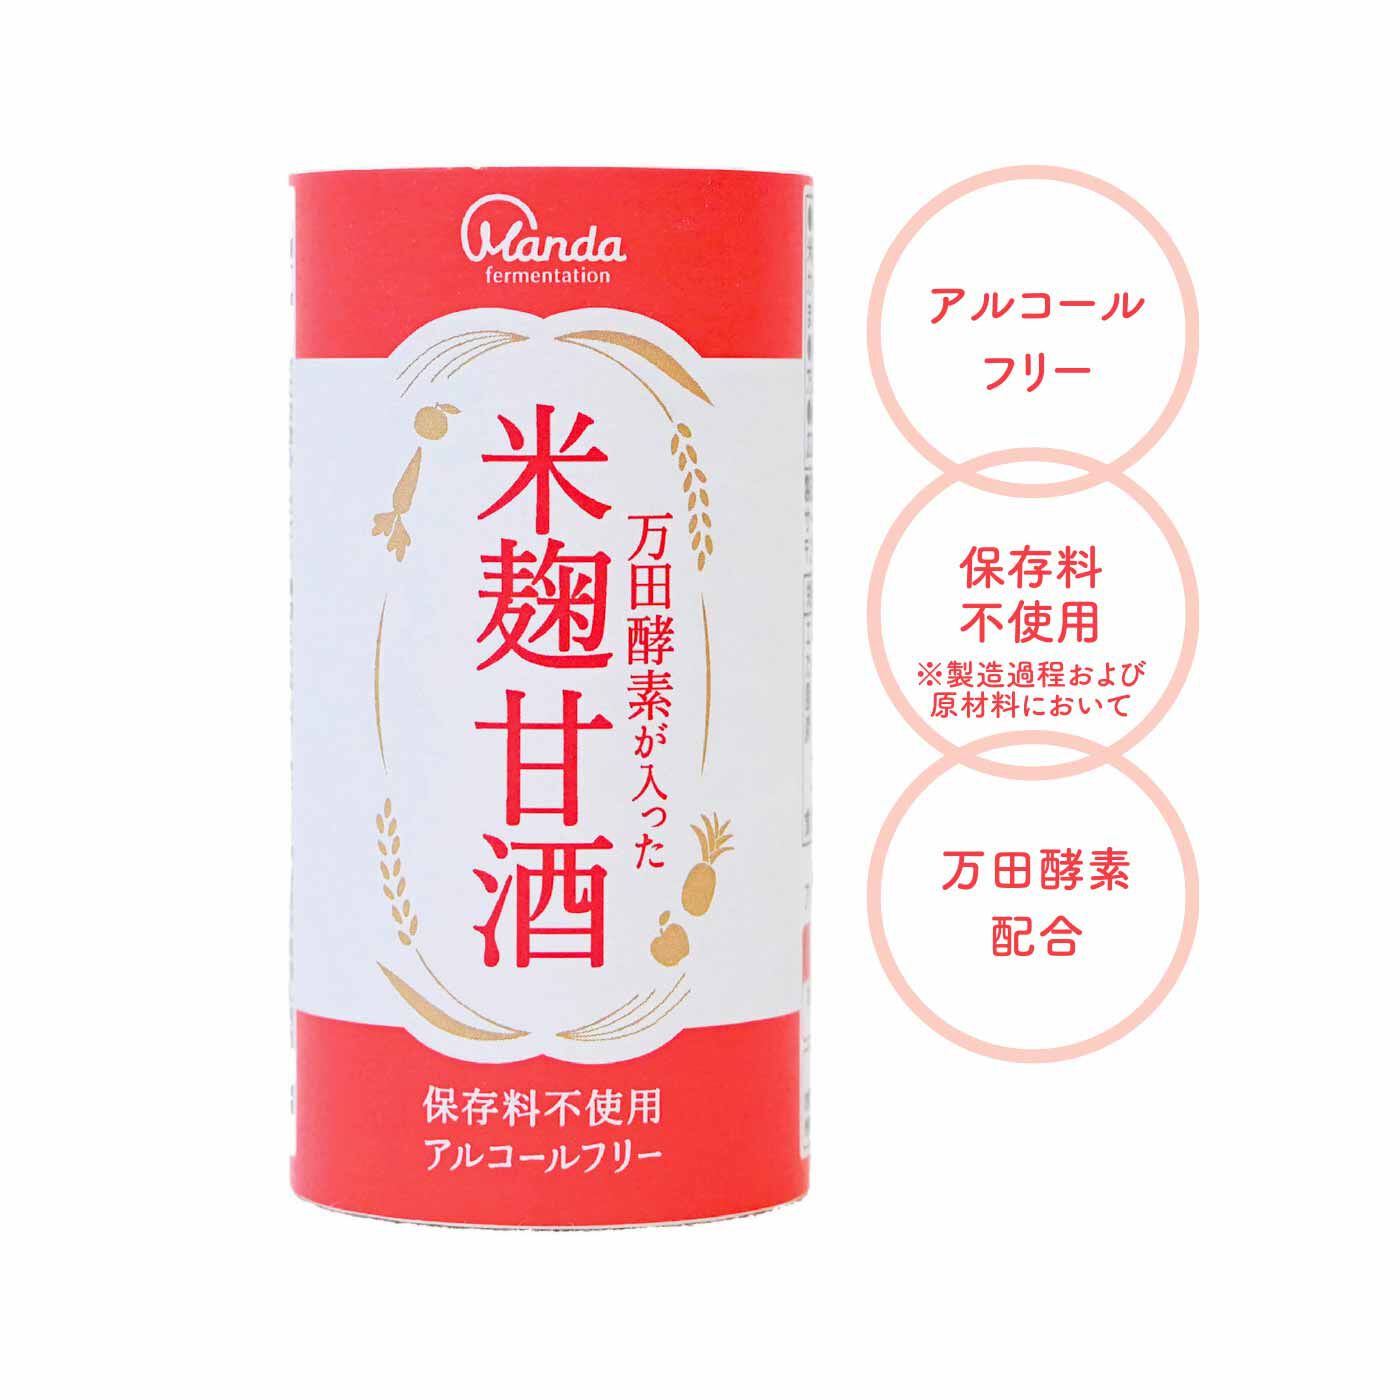 FELISSIMO PARTNERS|甘さ控えめコクある味わい 万田酵素が入った米麹甘酒の会（6回予約）|缶の形状をした紙製の容器なので普通ゴミとして処分できます。